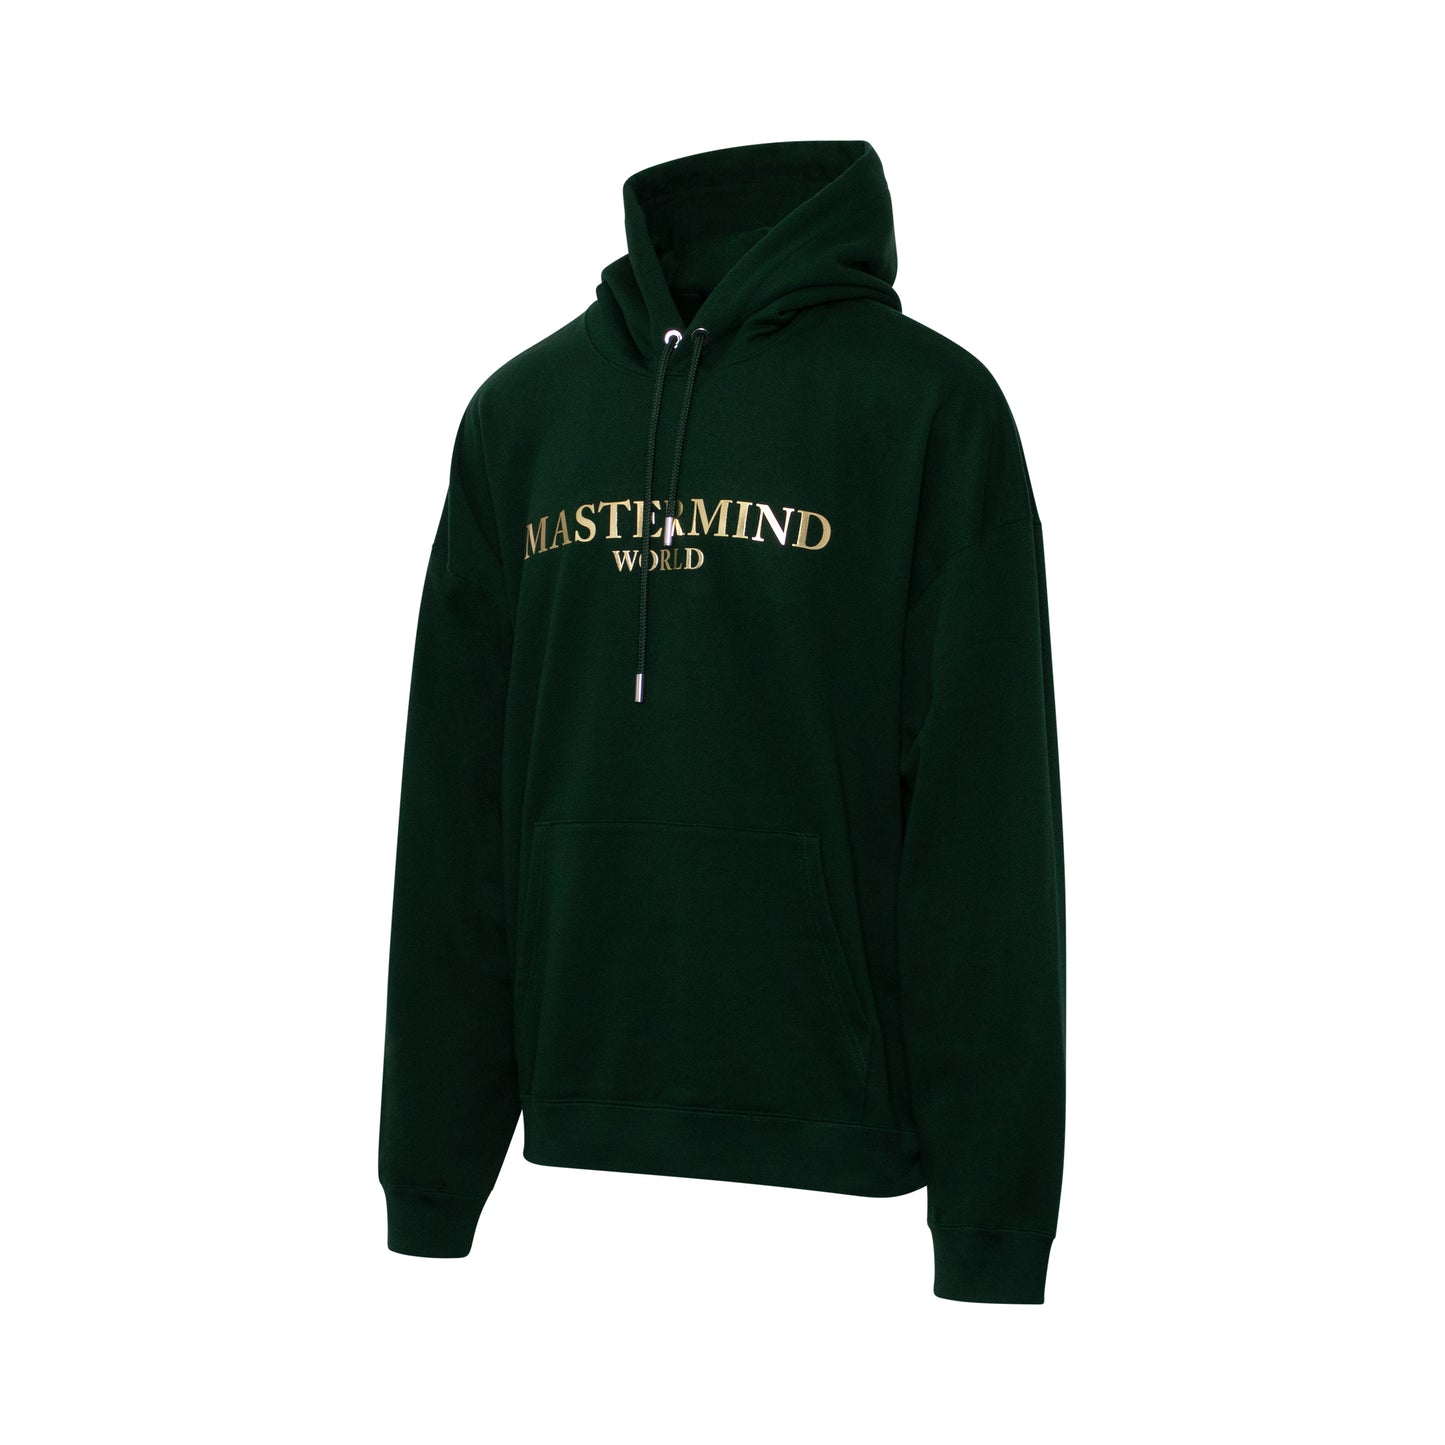 Mastermind World Sweatshirt in Dark Green